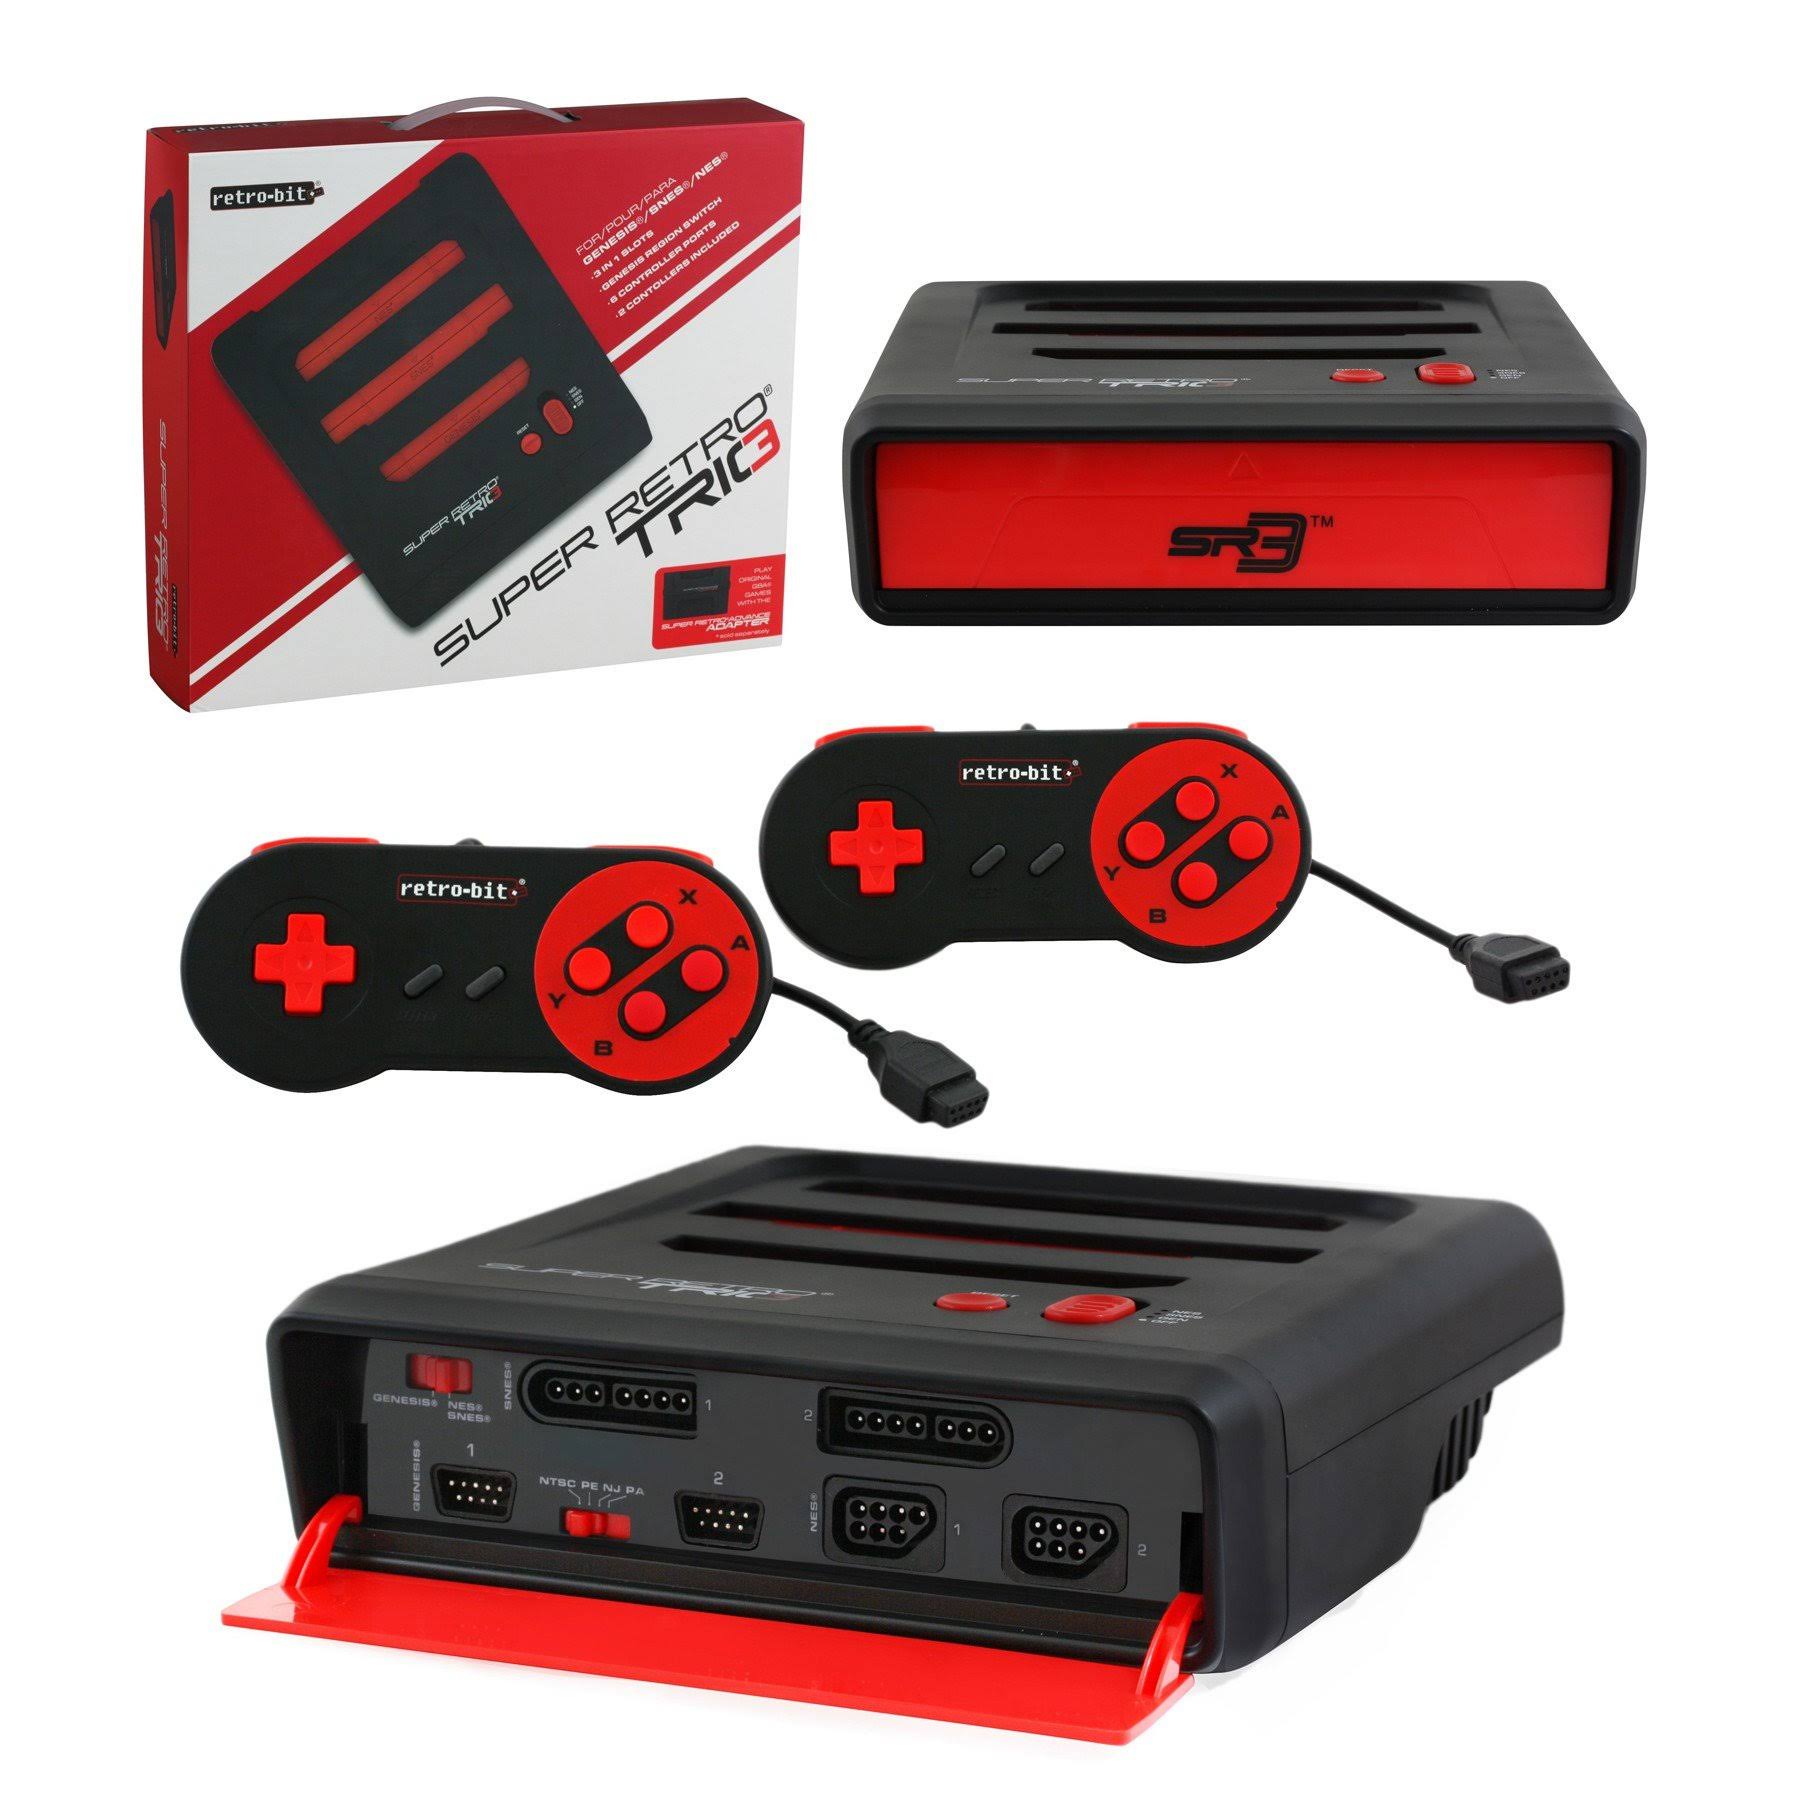 Retro-Bit Super RetroTrio Console - NES SNES Genesis 3 in 1 System, Red and Black